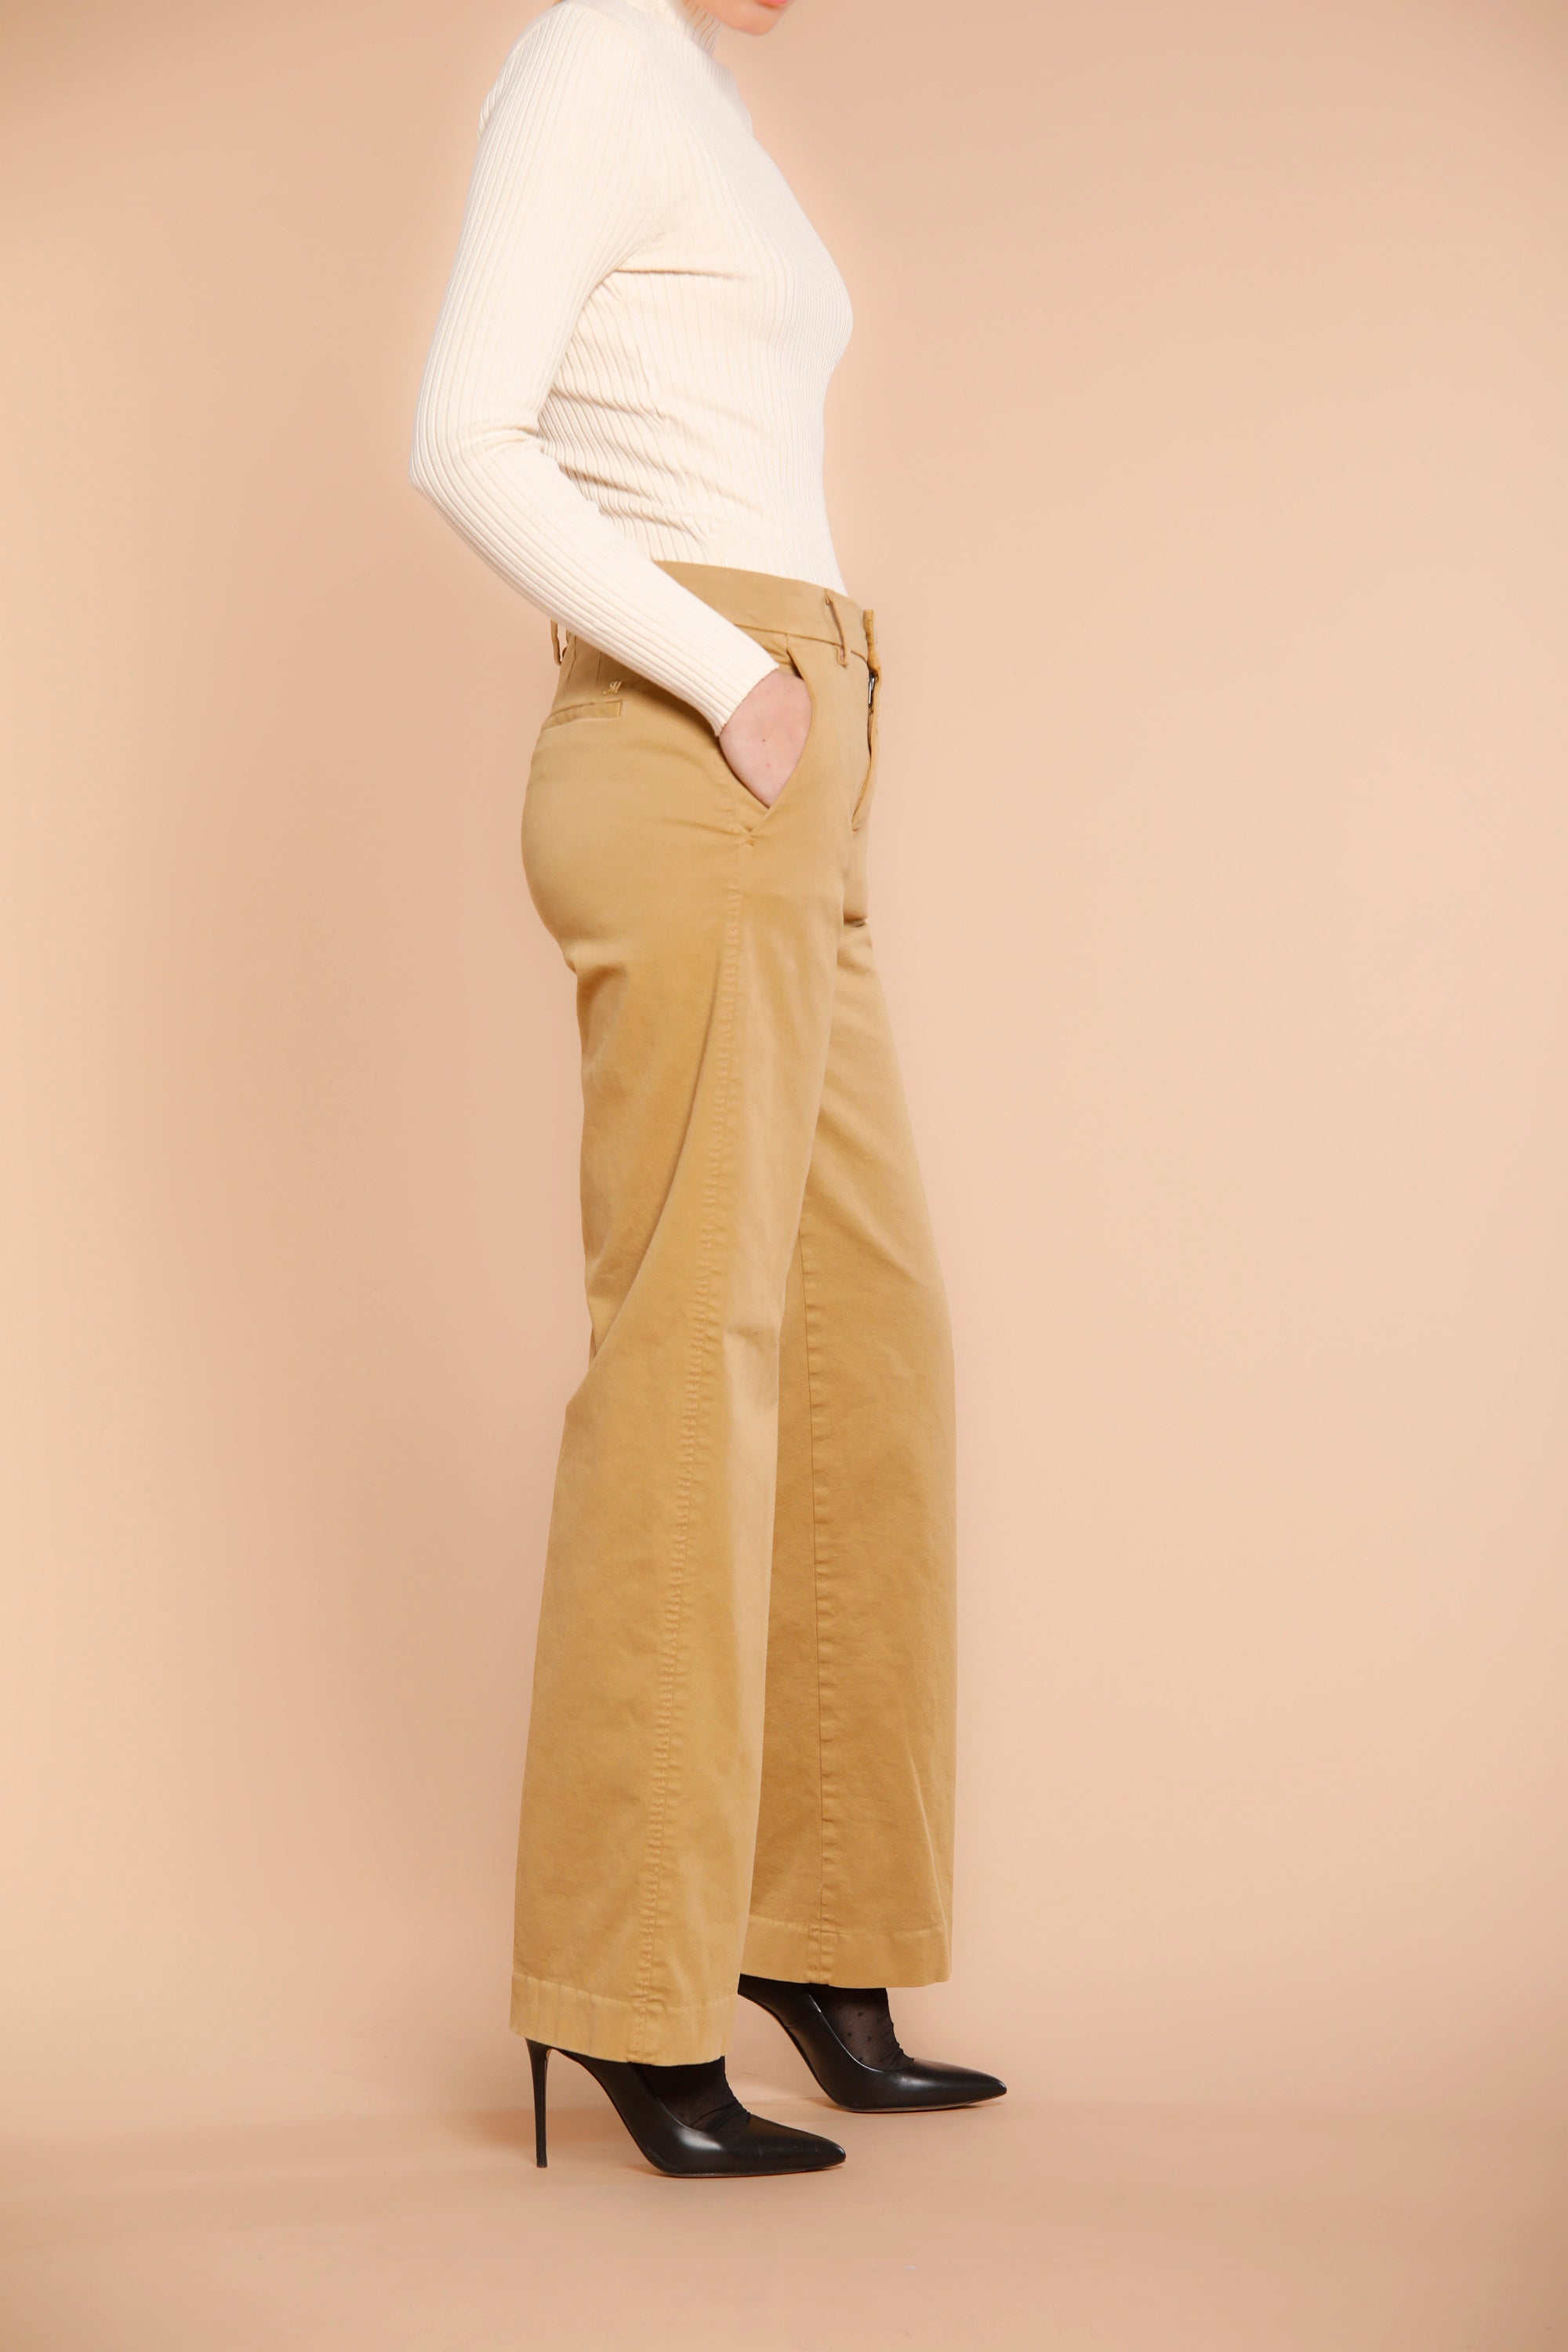 Image 2 du pantalon chino femme en satin couleur charpentier modèle New York Straight par Maosn's